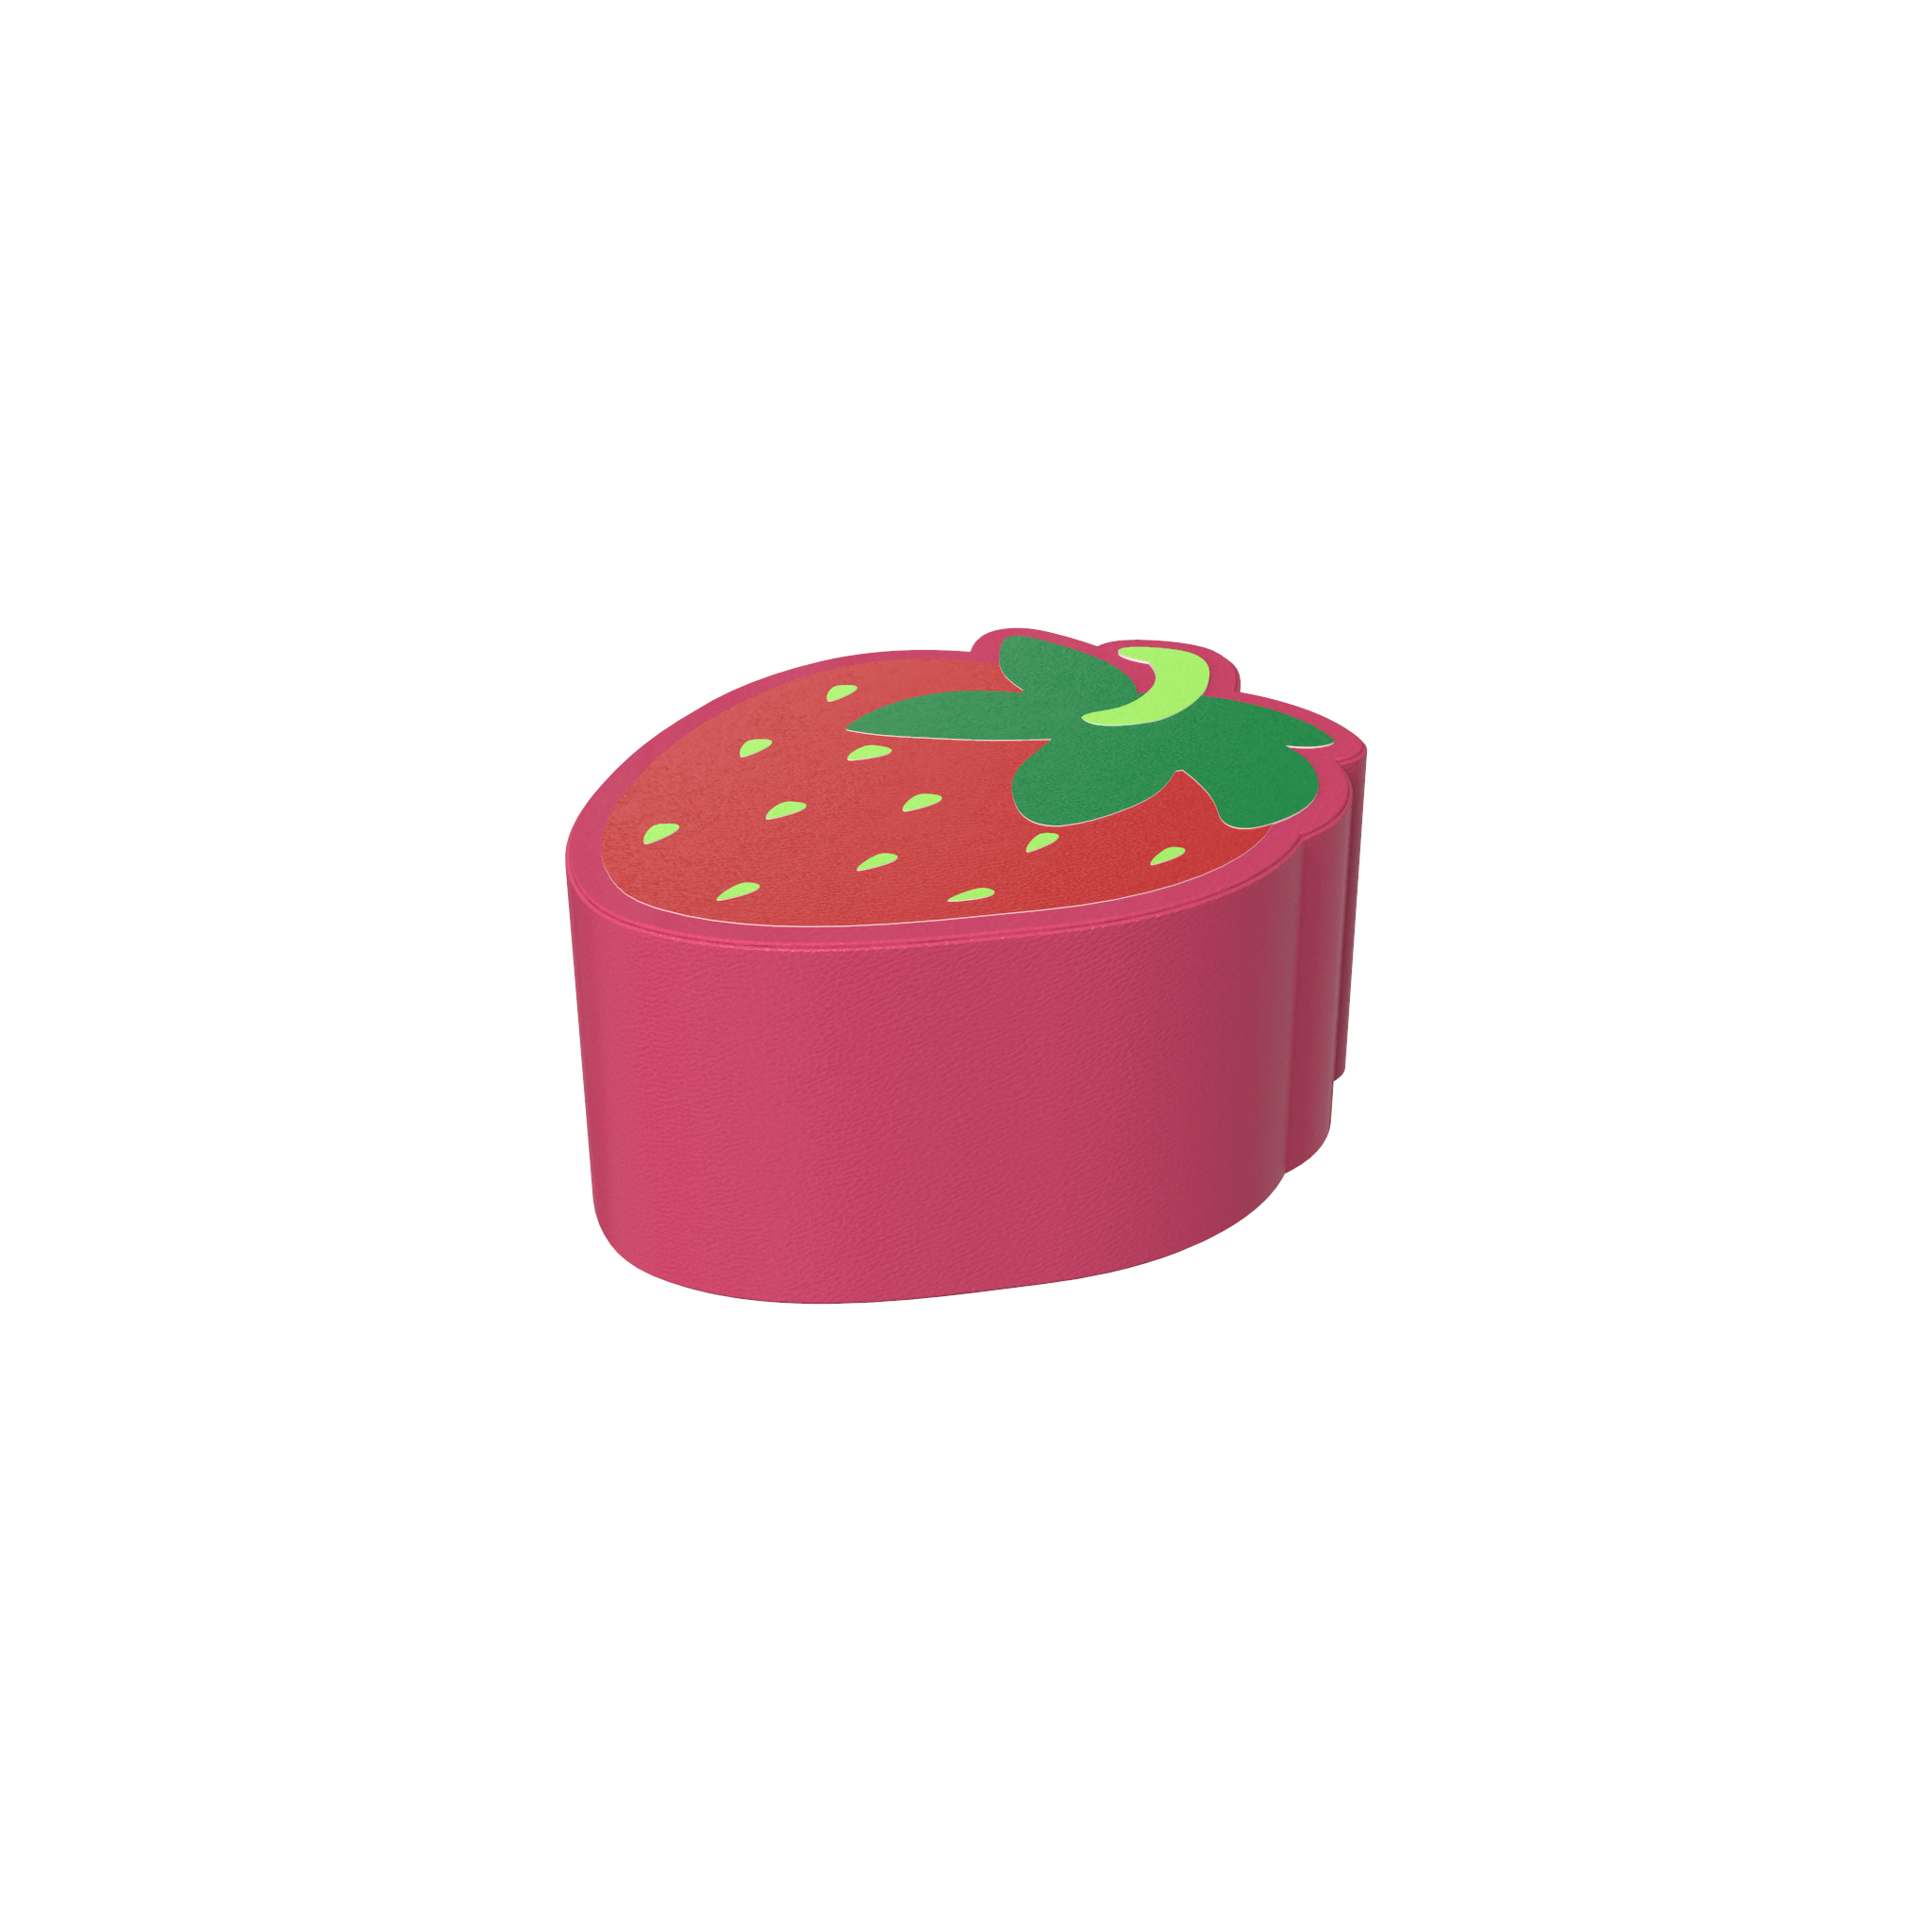 L'image montre un modules mousses Strawberry